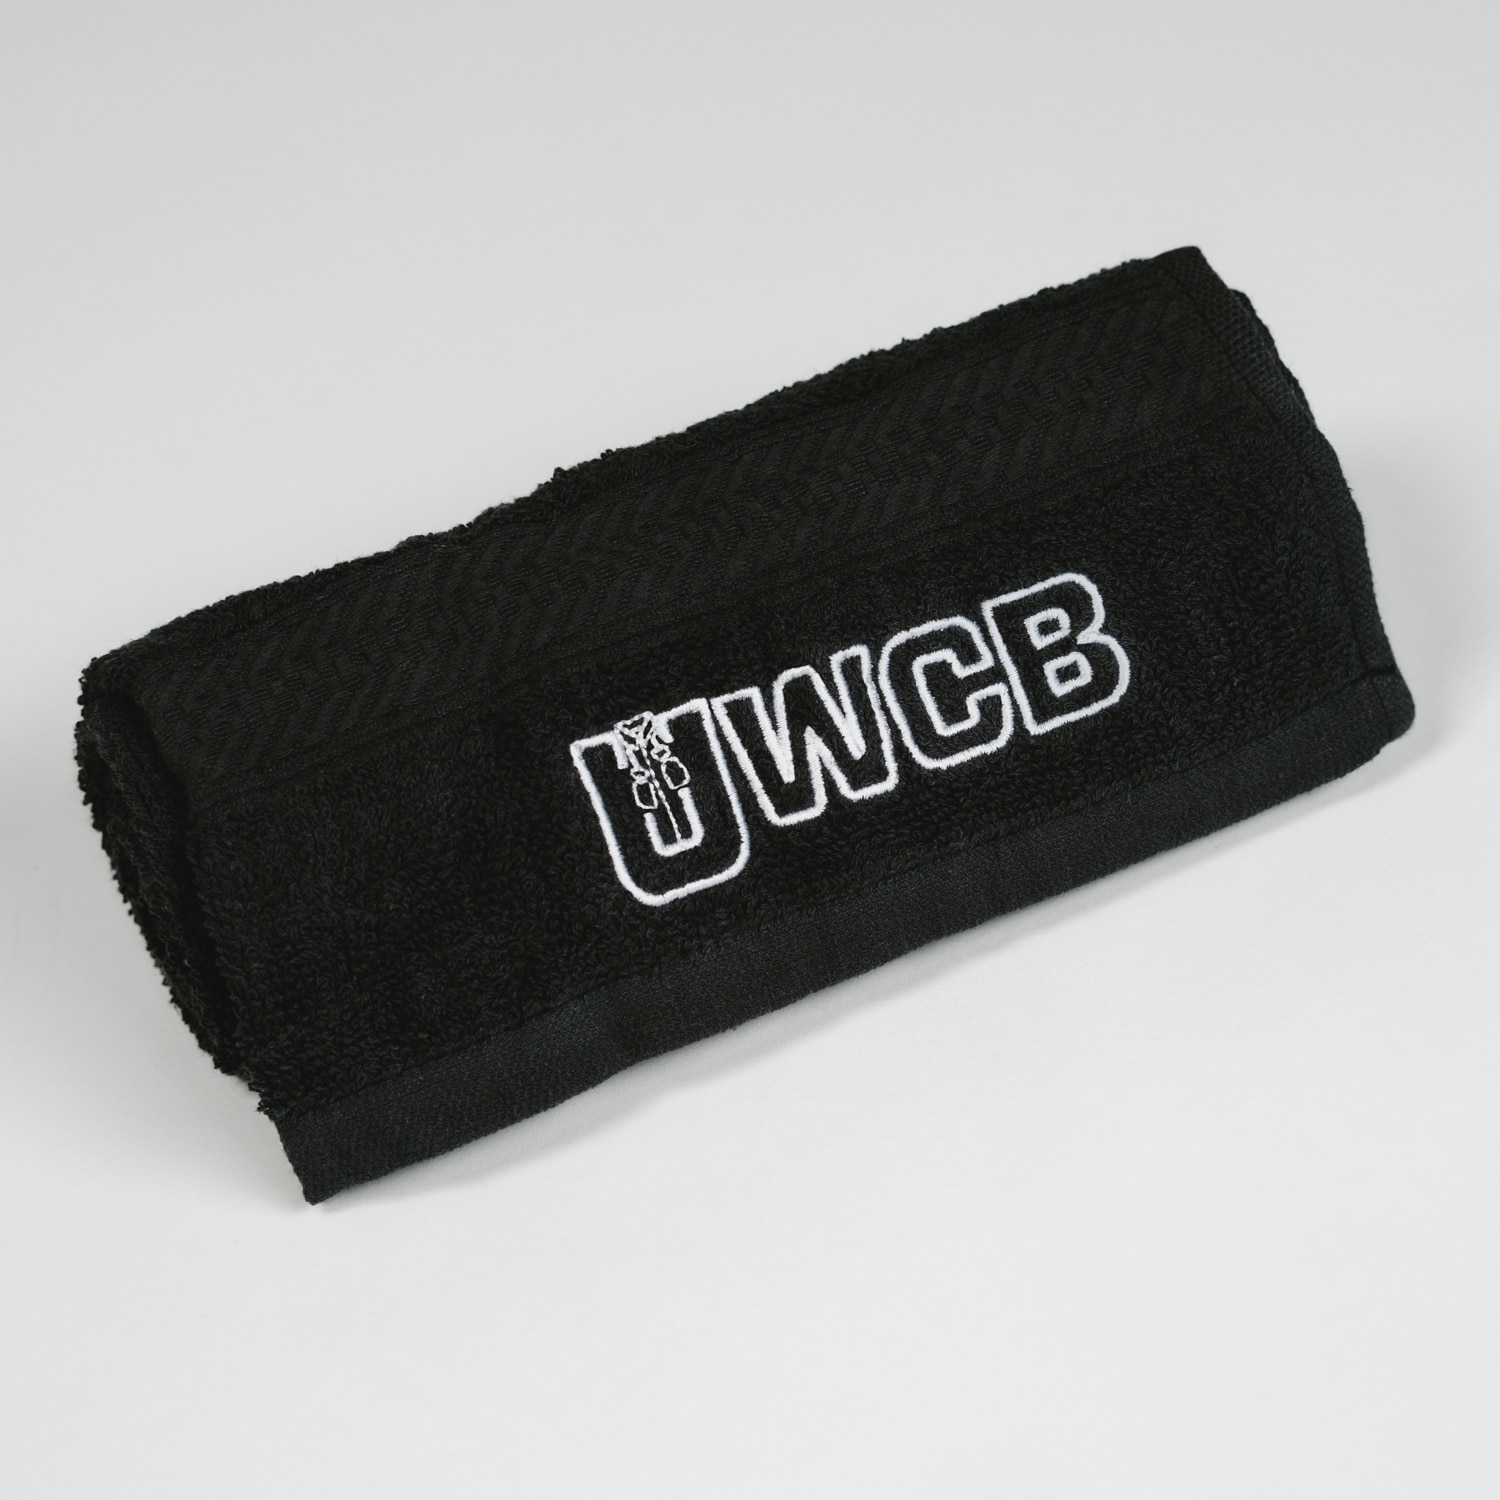 UWCB - Ultra Events